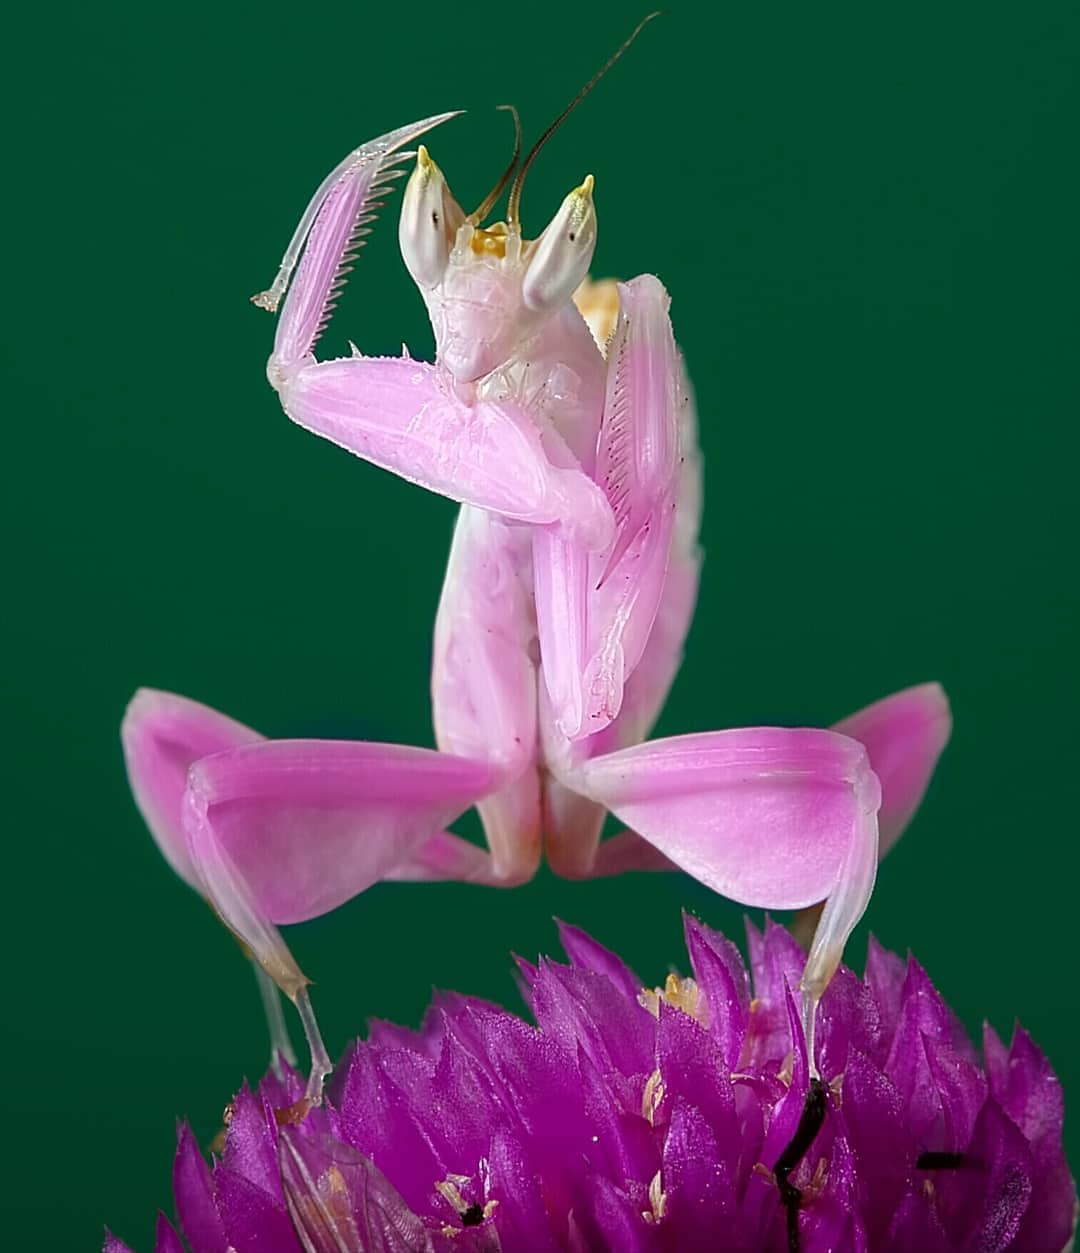 Окраска богомола. Богомол Pseudocreobotra wahlbergii. Богомол орхидейный белый. Орхидейный богомол на цветке. Розовый орхидейный богомол.